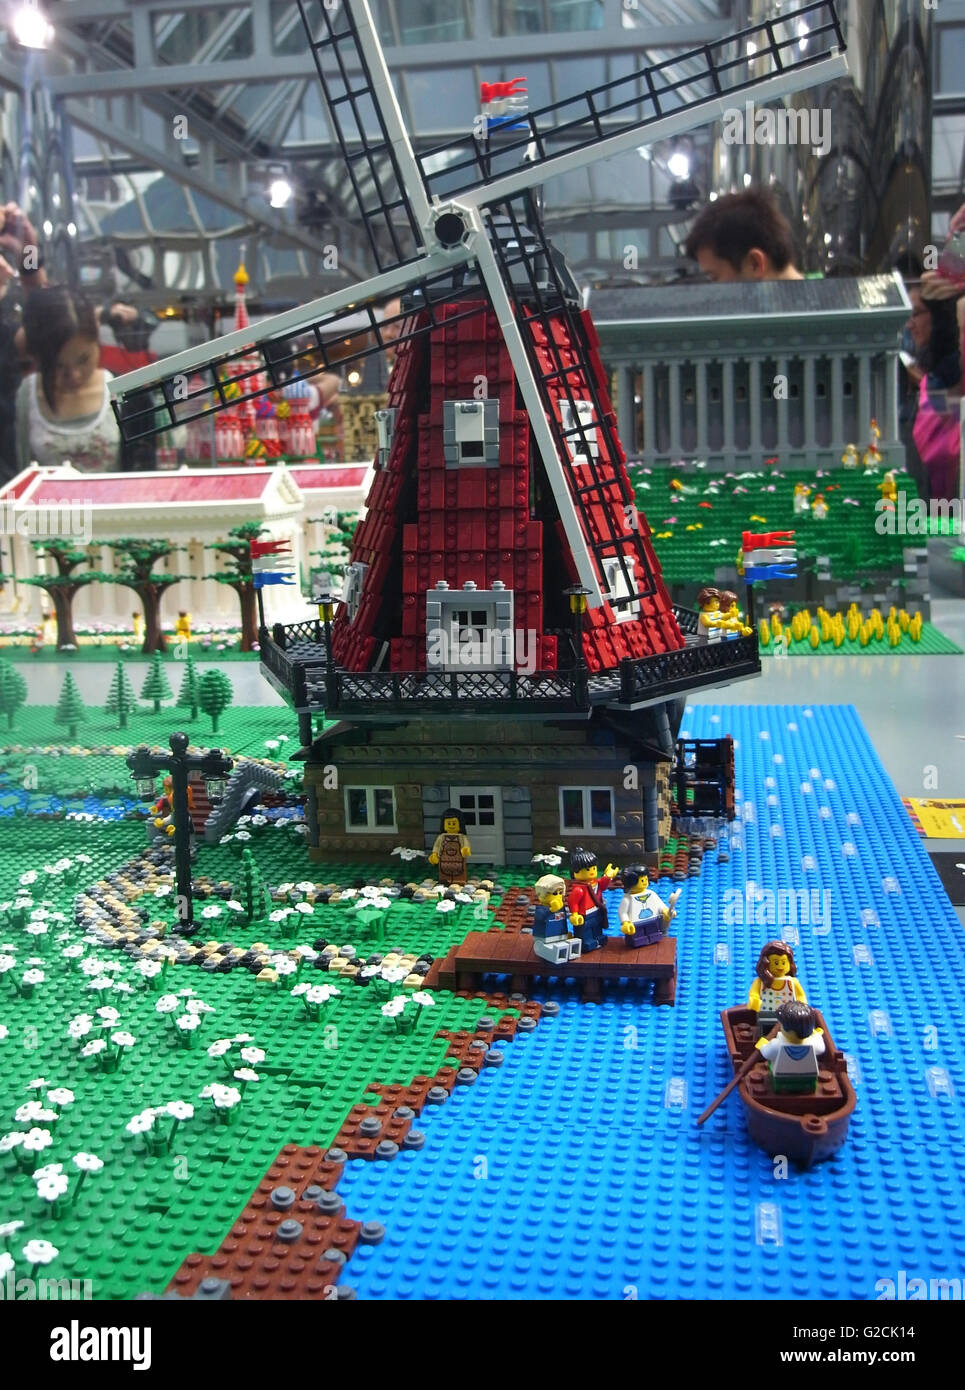 LEGO Modell bauen alte alte Zeit Tag Himmel Spielzeug Spaß Landschaft  Windmühle Rasen heiraten in Amsterdam Stockfotografie - Alamy